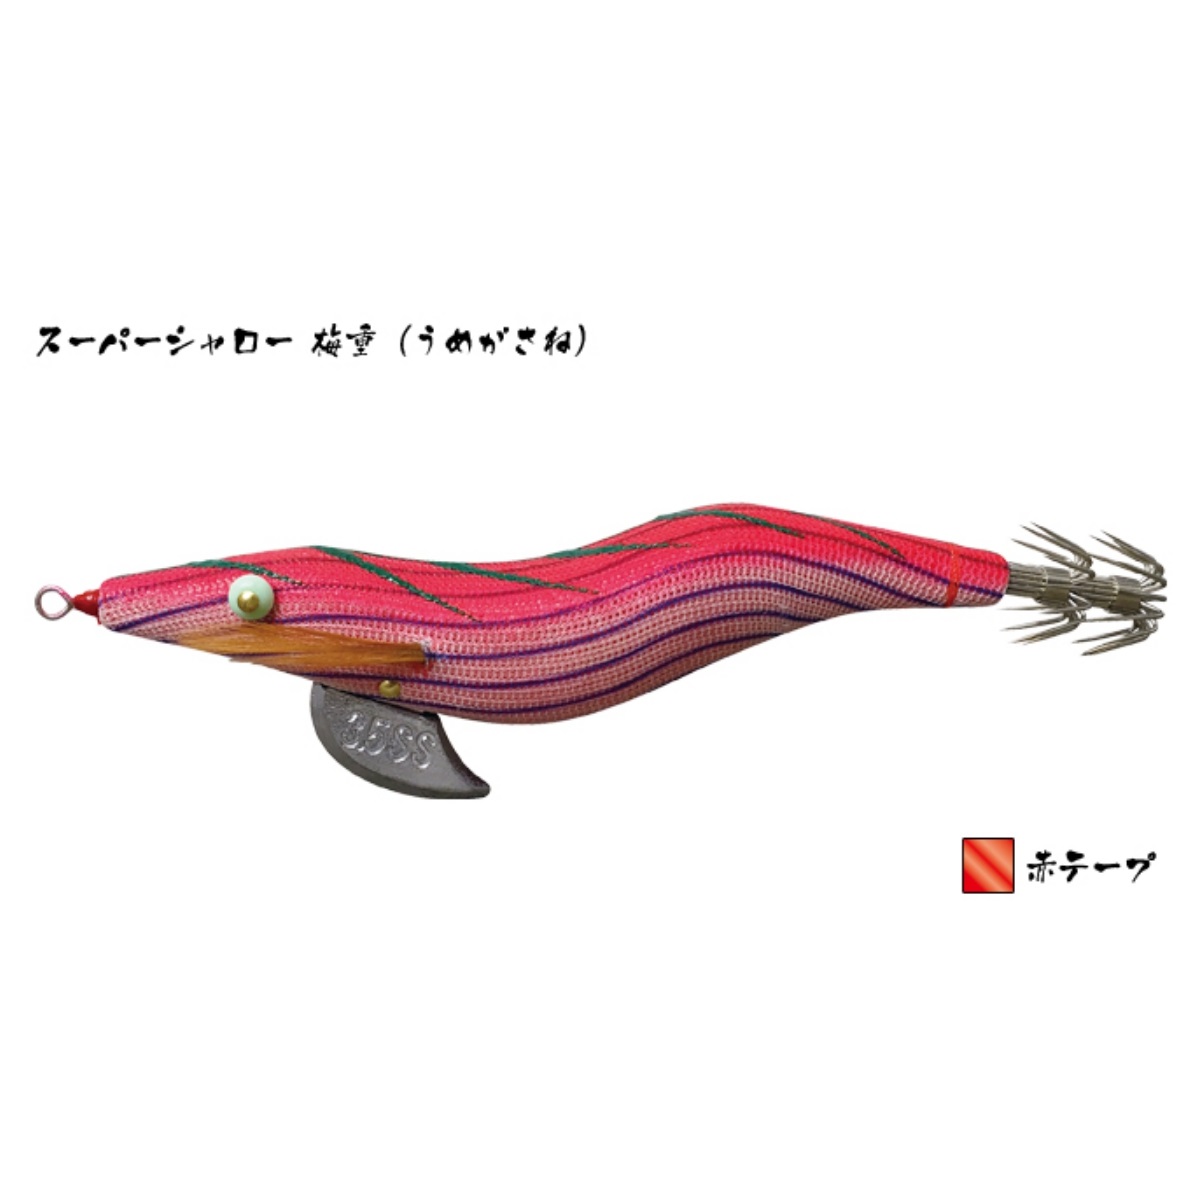 林釣漁具製作所/HAYASHI 餌木猿 SS 3.5号 スーパーシャロースロー